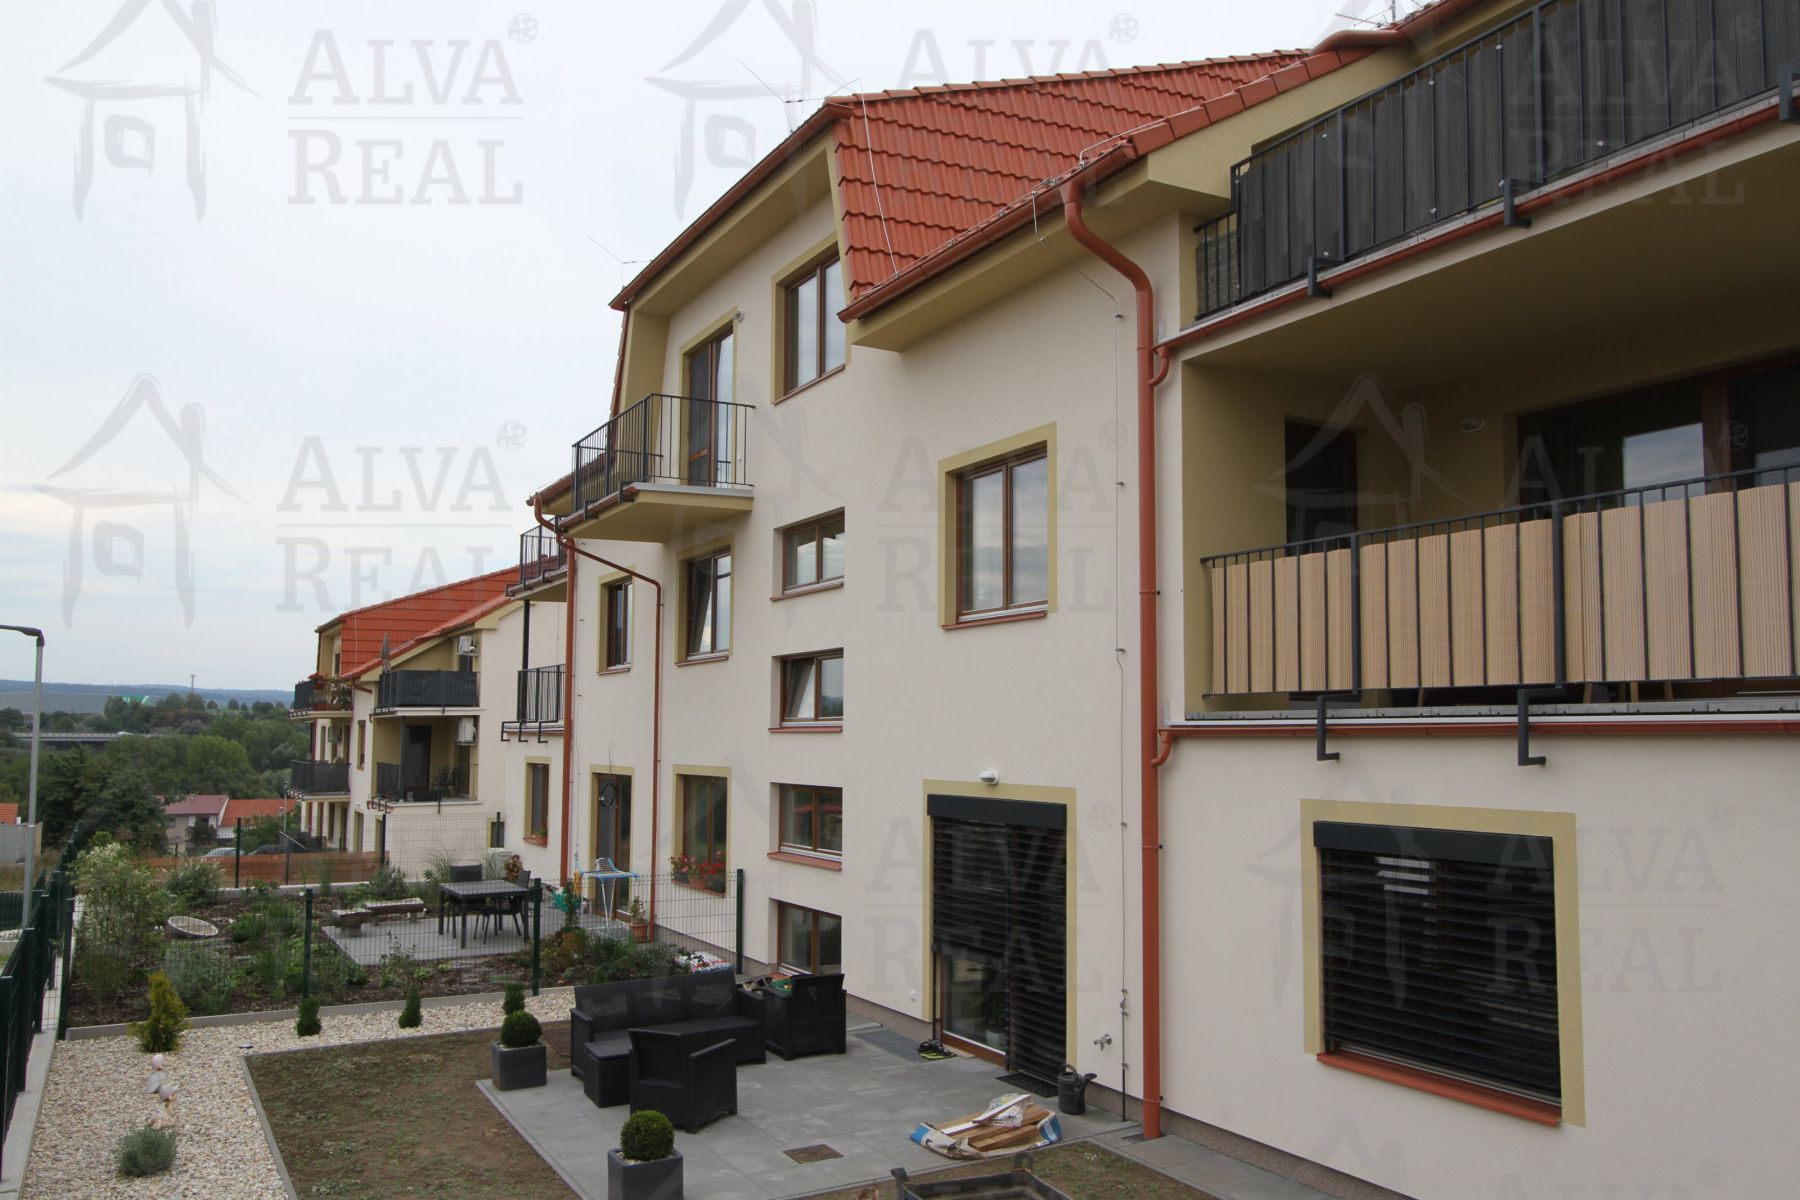 Nabízíme Vám pronájem novostavby bytu 2+kk v Holubicích s balkonem, plocha bytu 52,9 m2